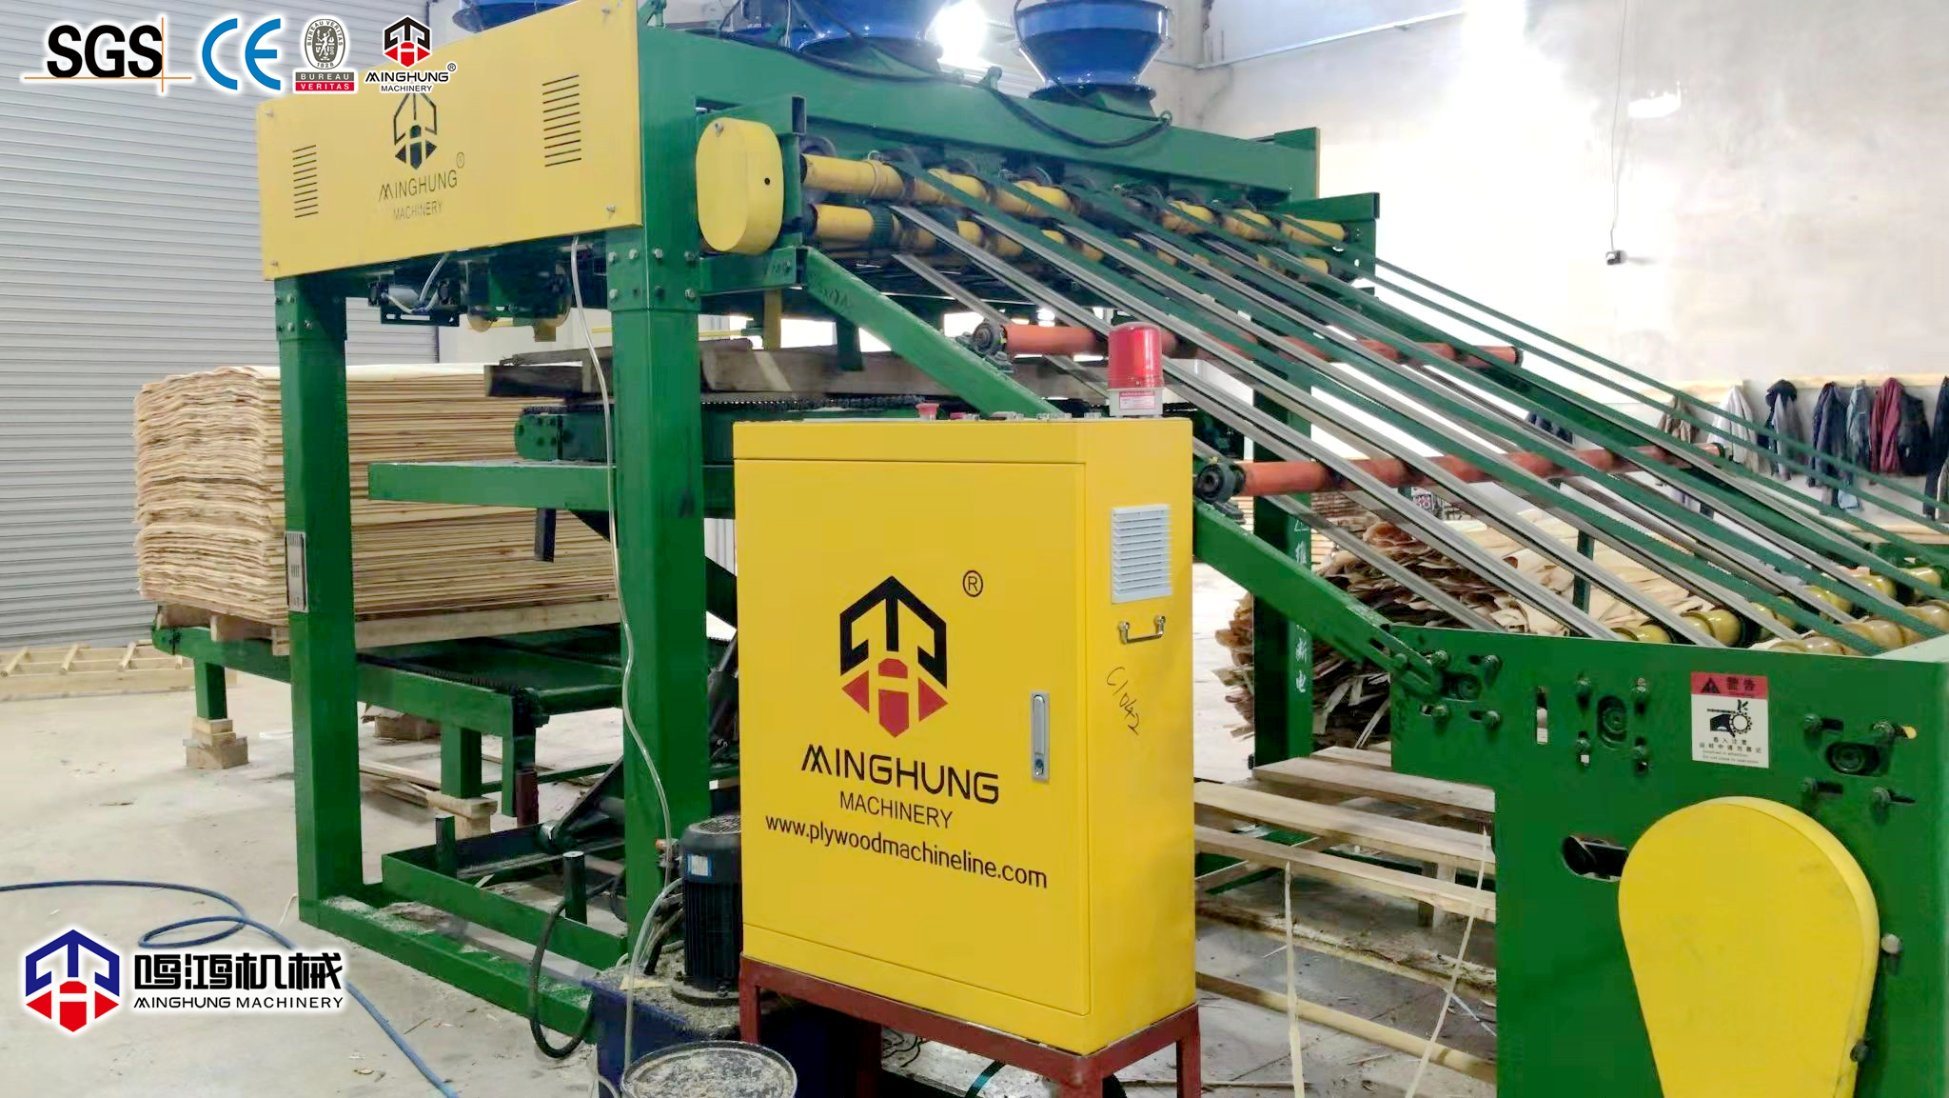 Holzbearbeitungsmaschine für die Sperrholzherstellung